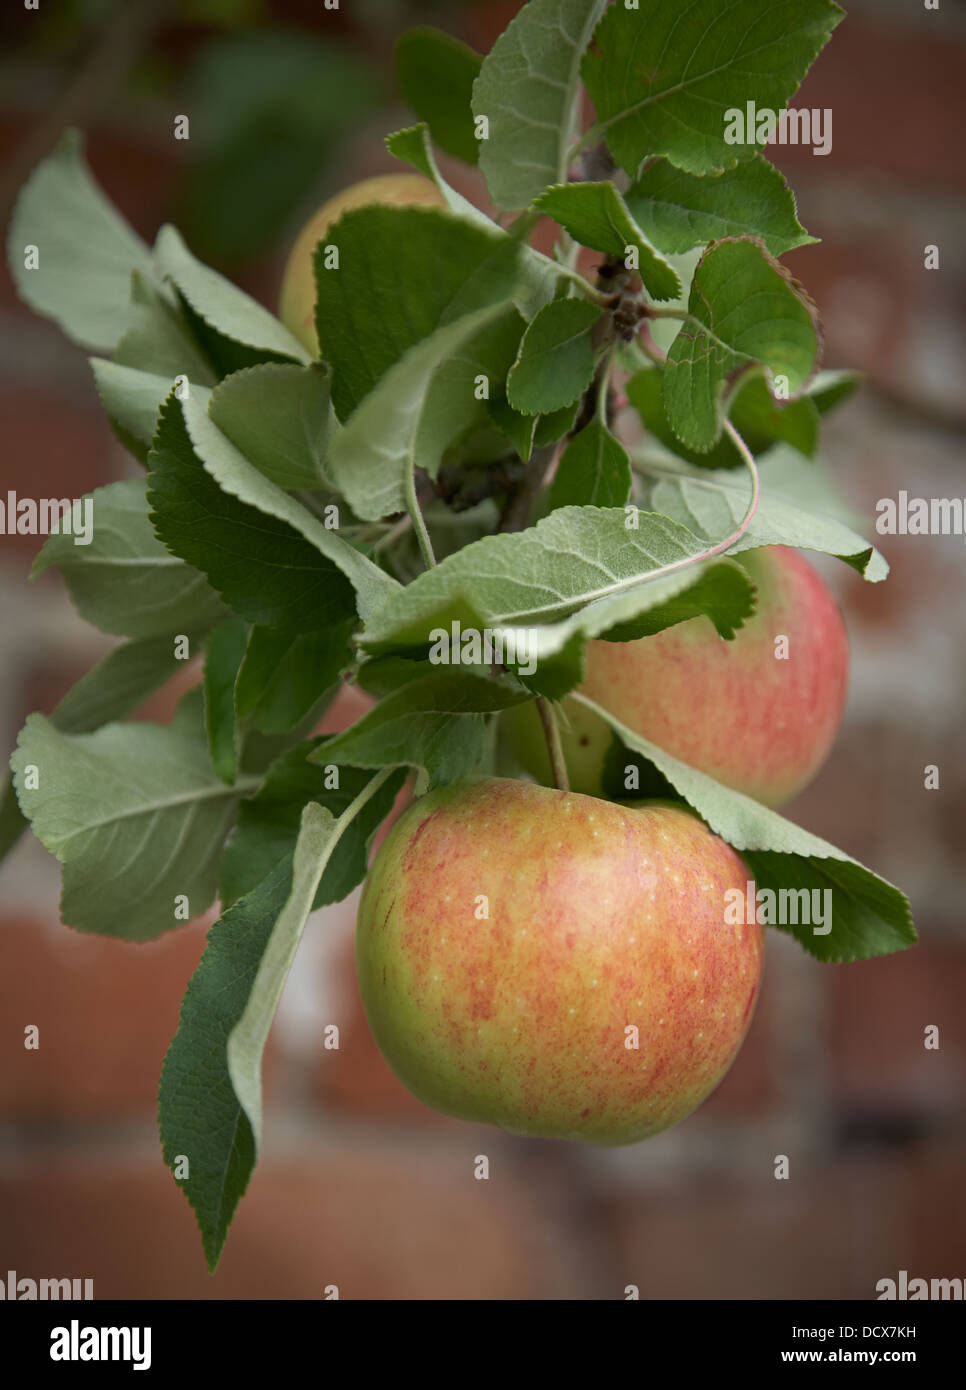 Las manzanas que cuelgan de una rama en un jardín amurallado Foto de stock